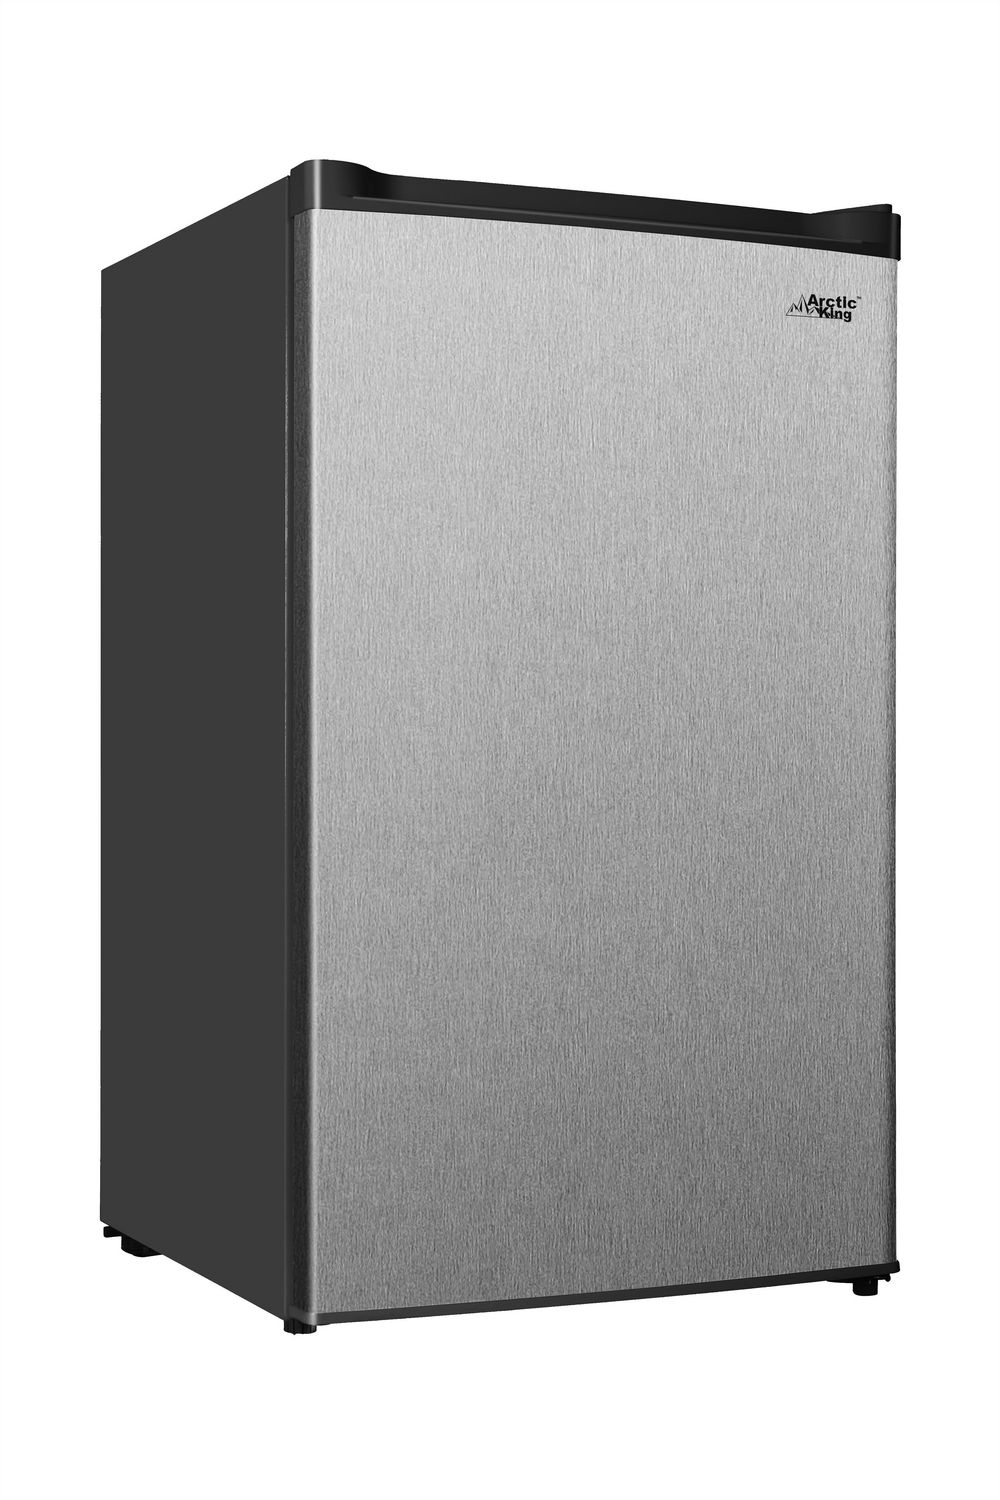 Arctic King 3.0 cu ft Upright Freezer Stainless Steel Door